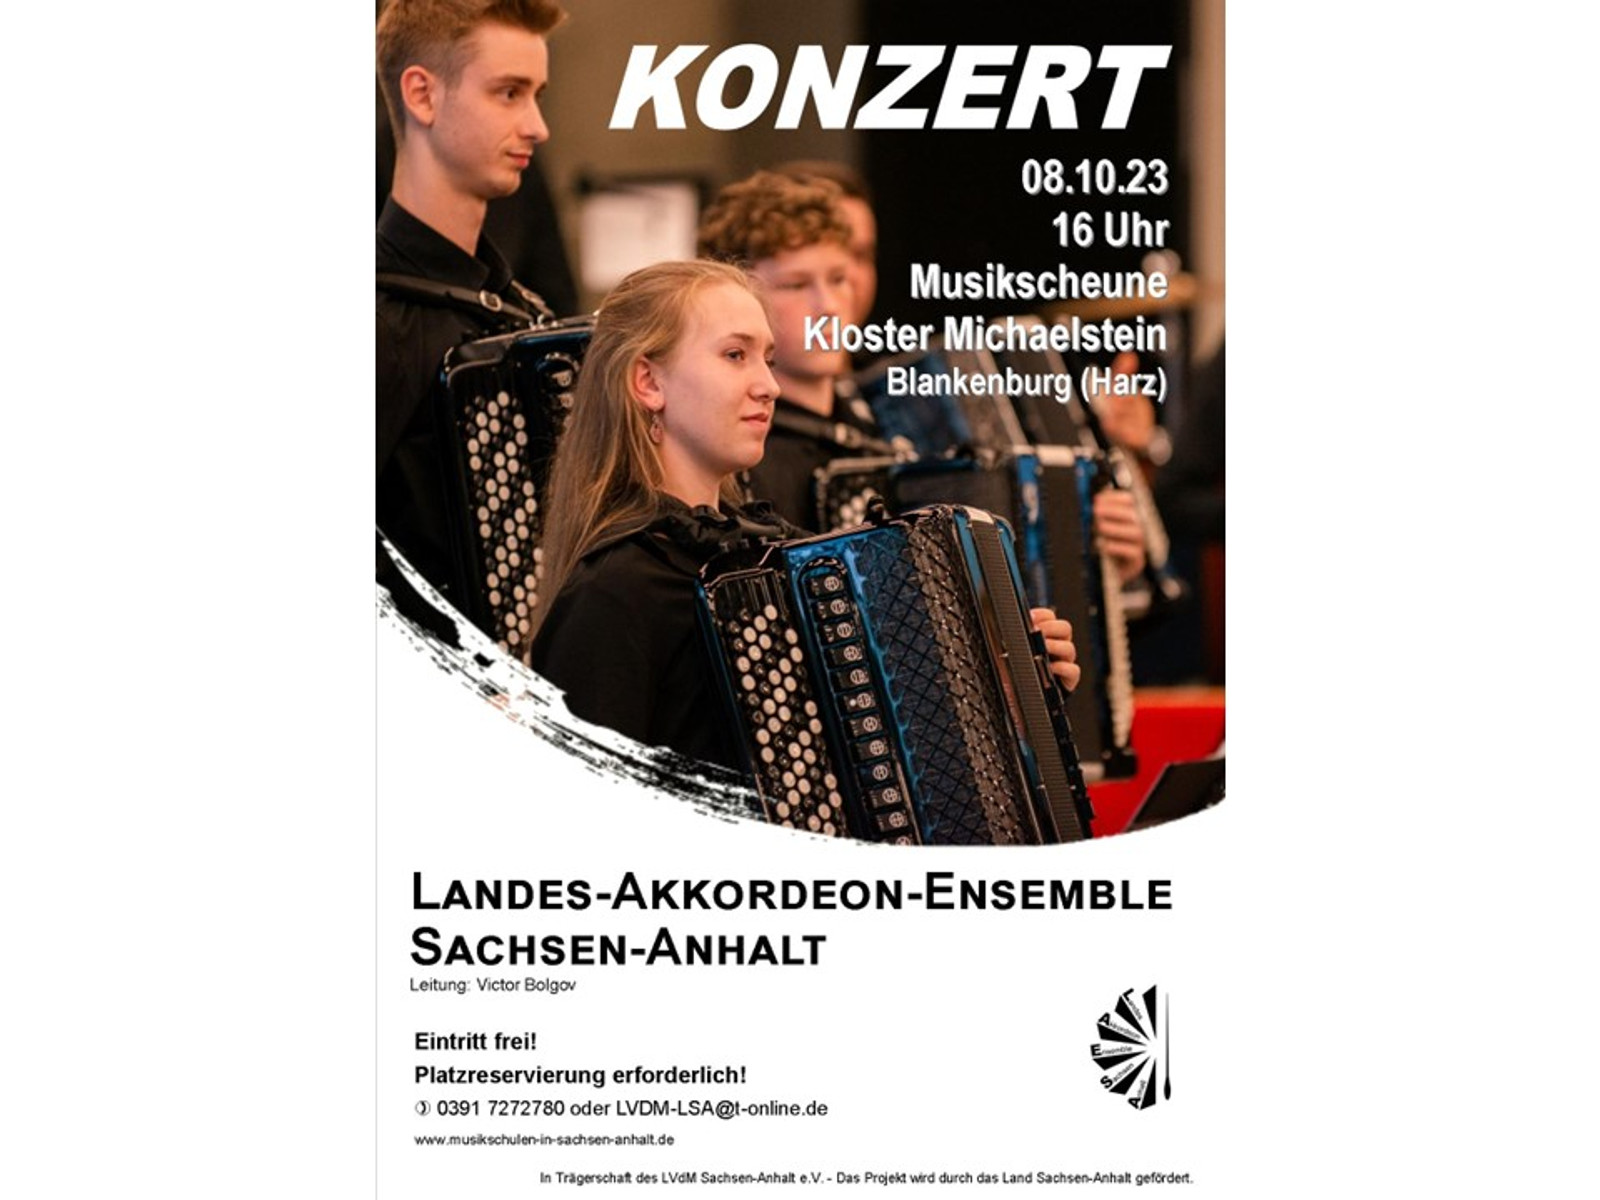 Landes Akkordeon Ensemble Sachsen-Anhalt